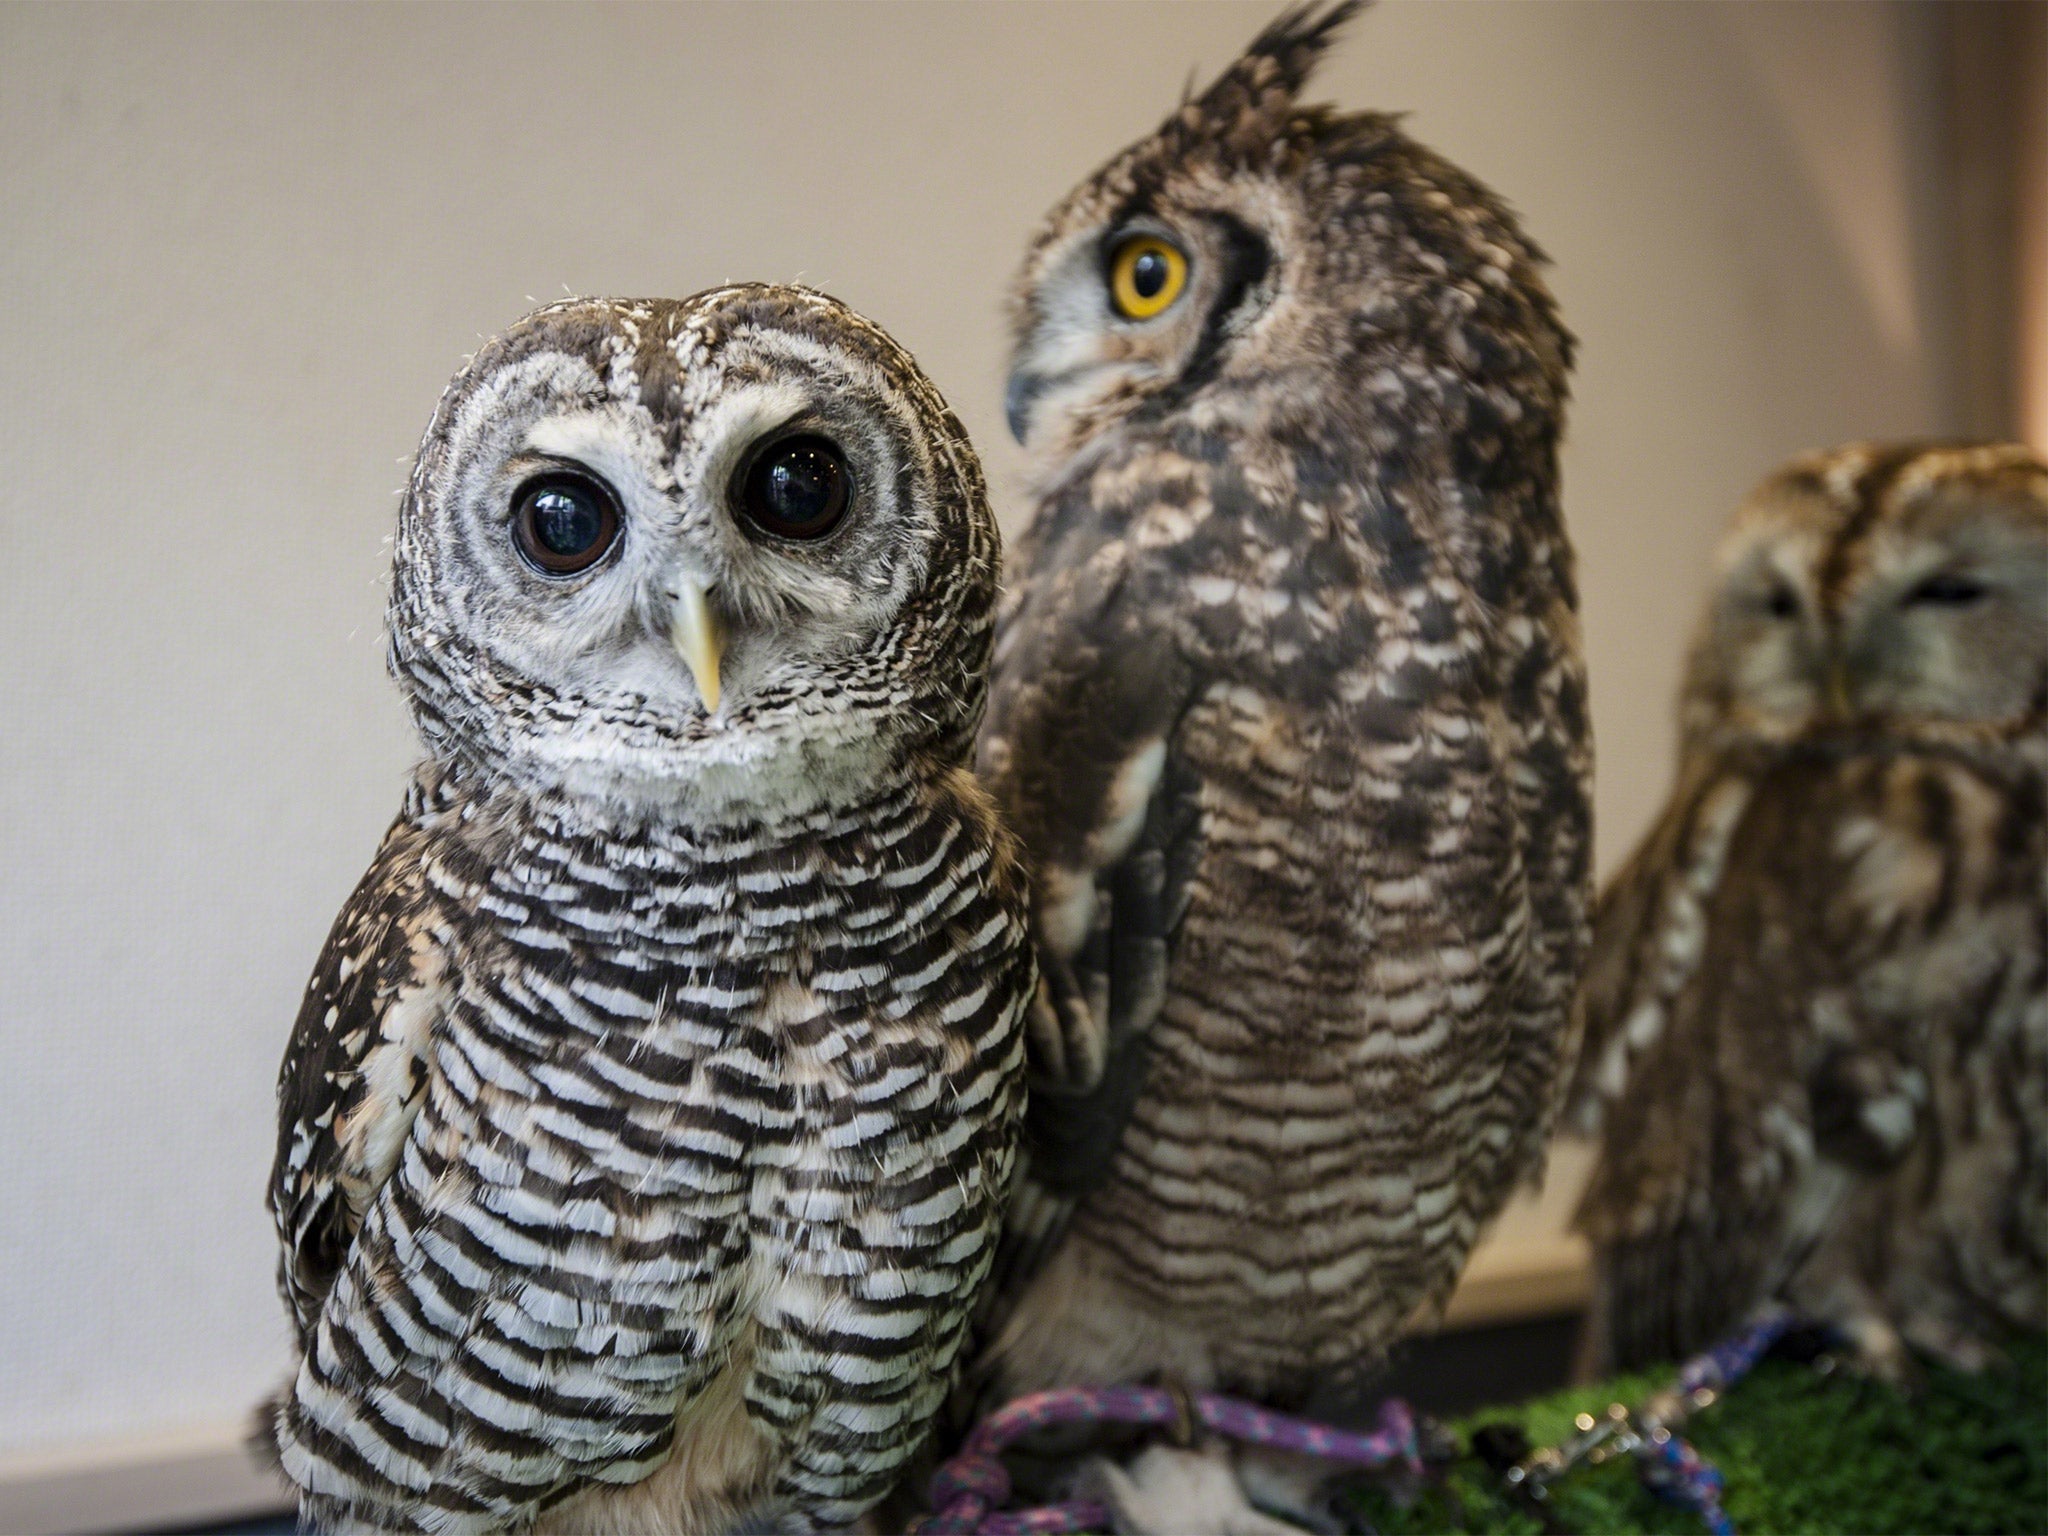 Owls sit on display at Tori-no Iru Cafe in Tokyo